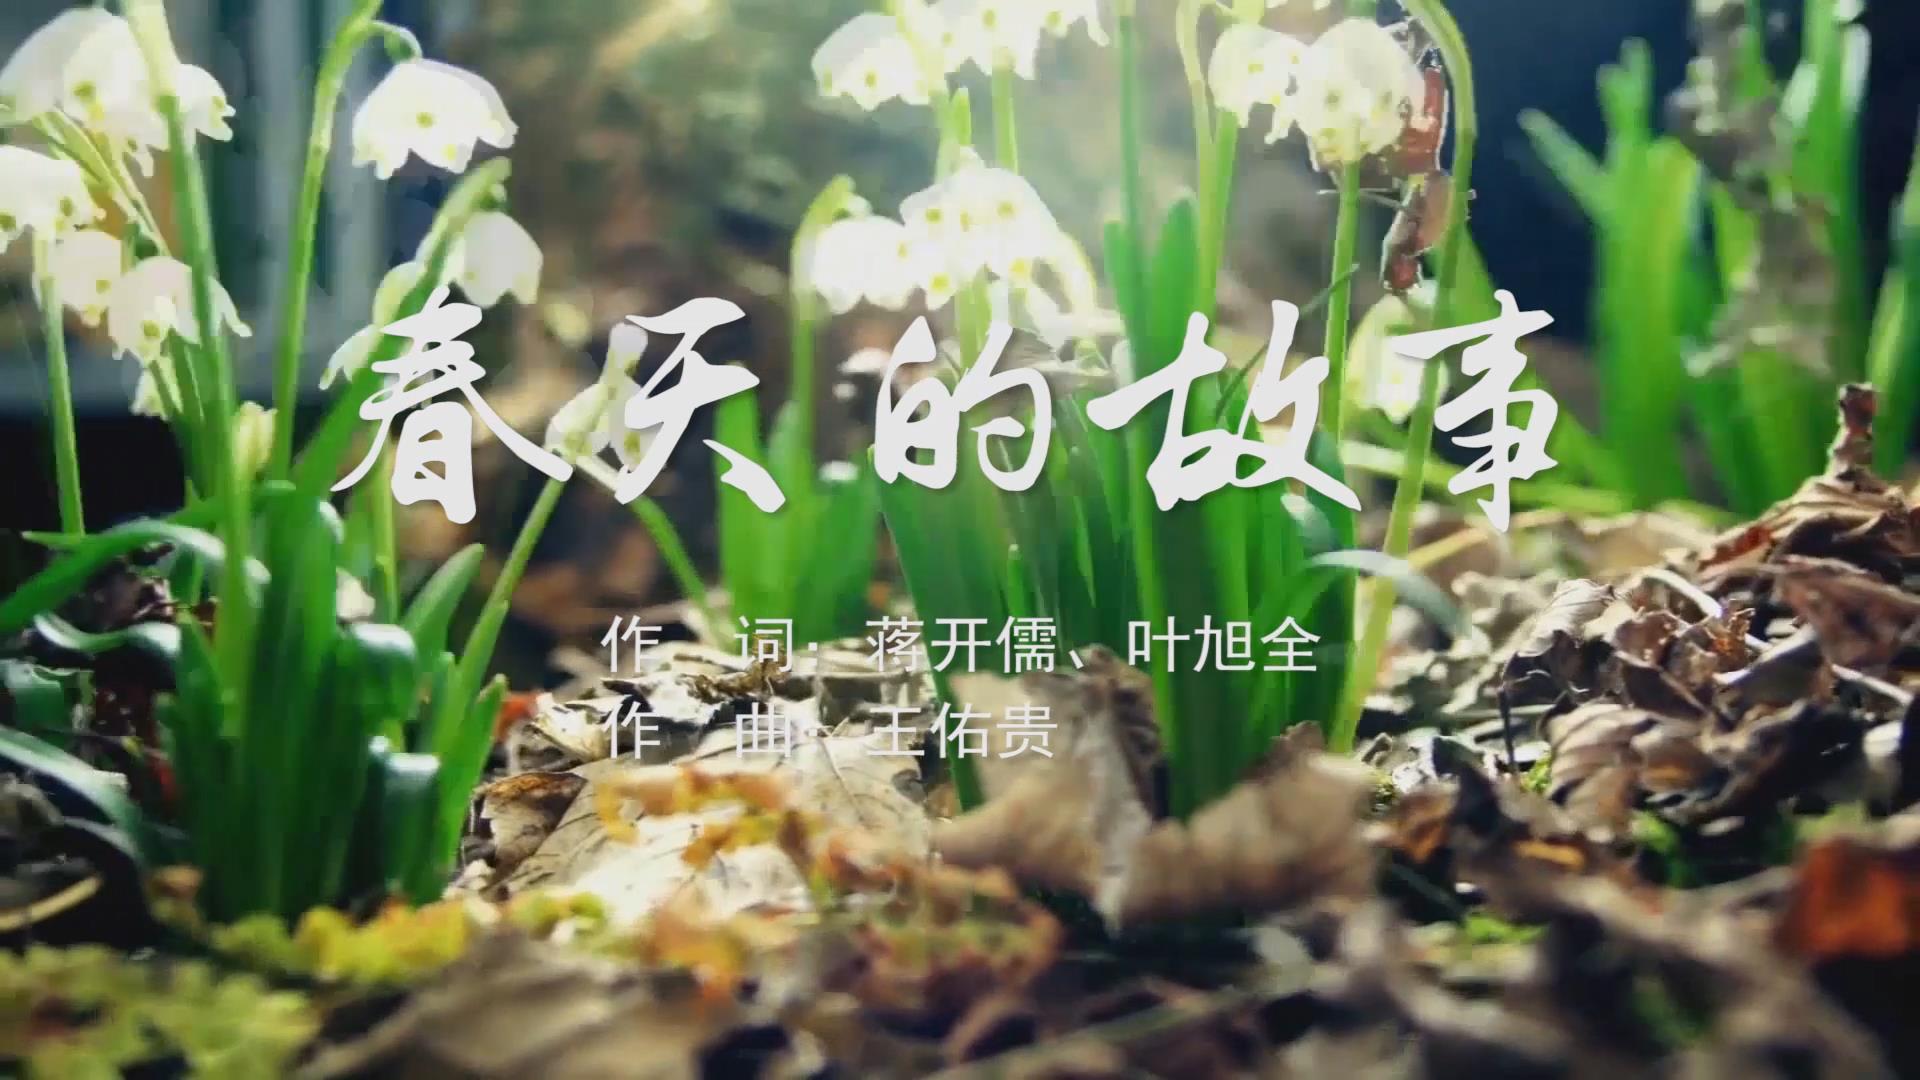 春天的故事 MV字幕配乐伴奏舞台演出LED背景大屏幕视频素材TV